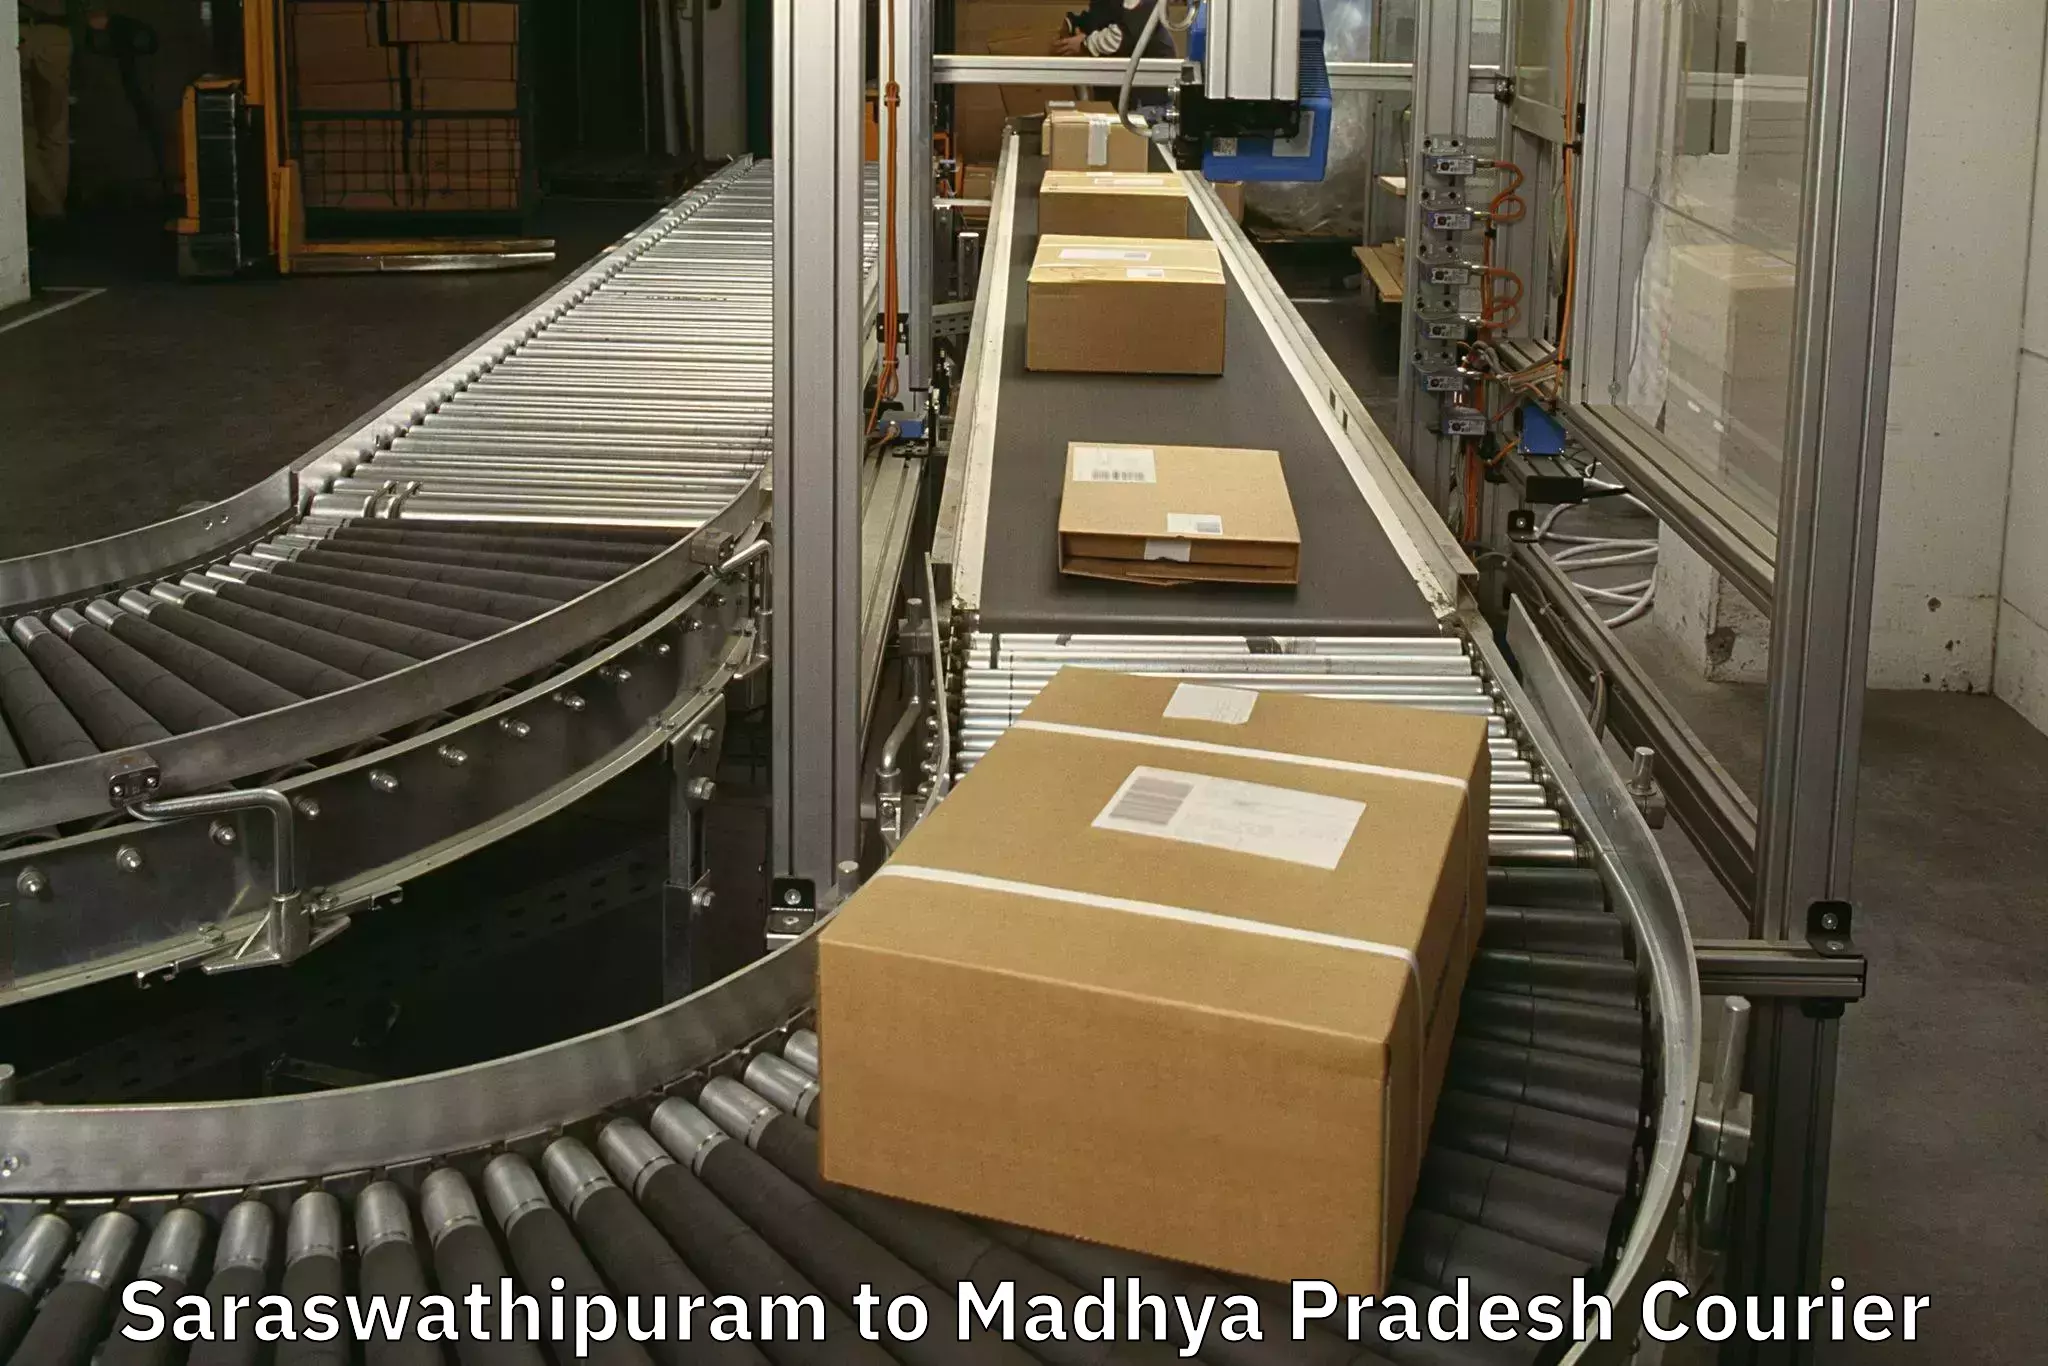 Baggage shipping service Saraswathipuram to Amarkantak